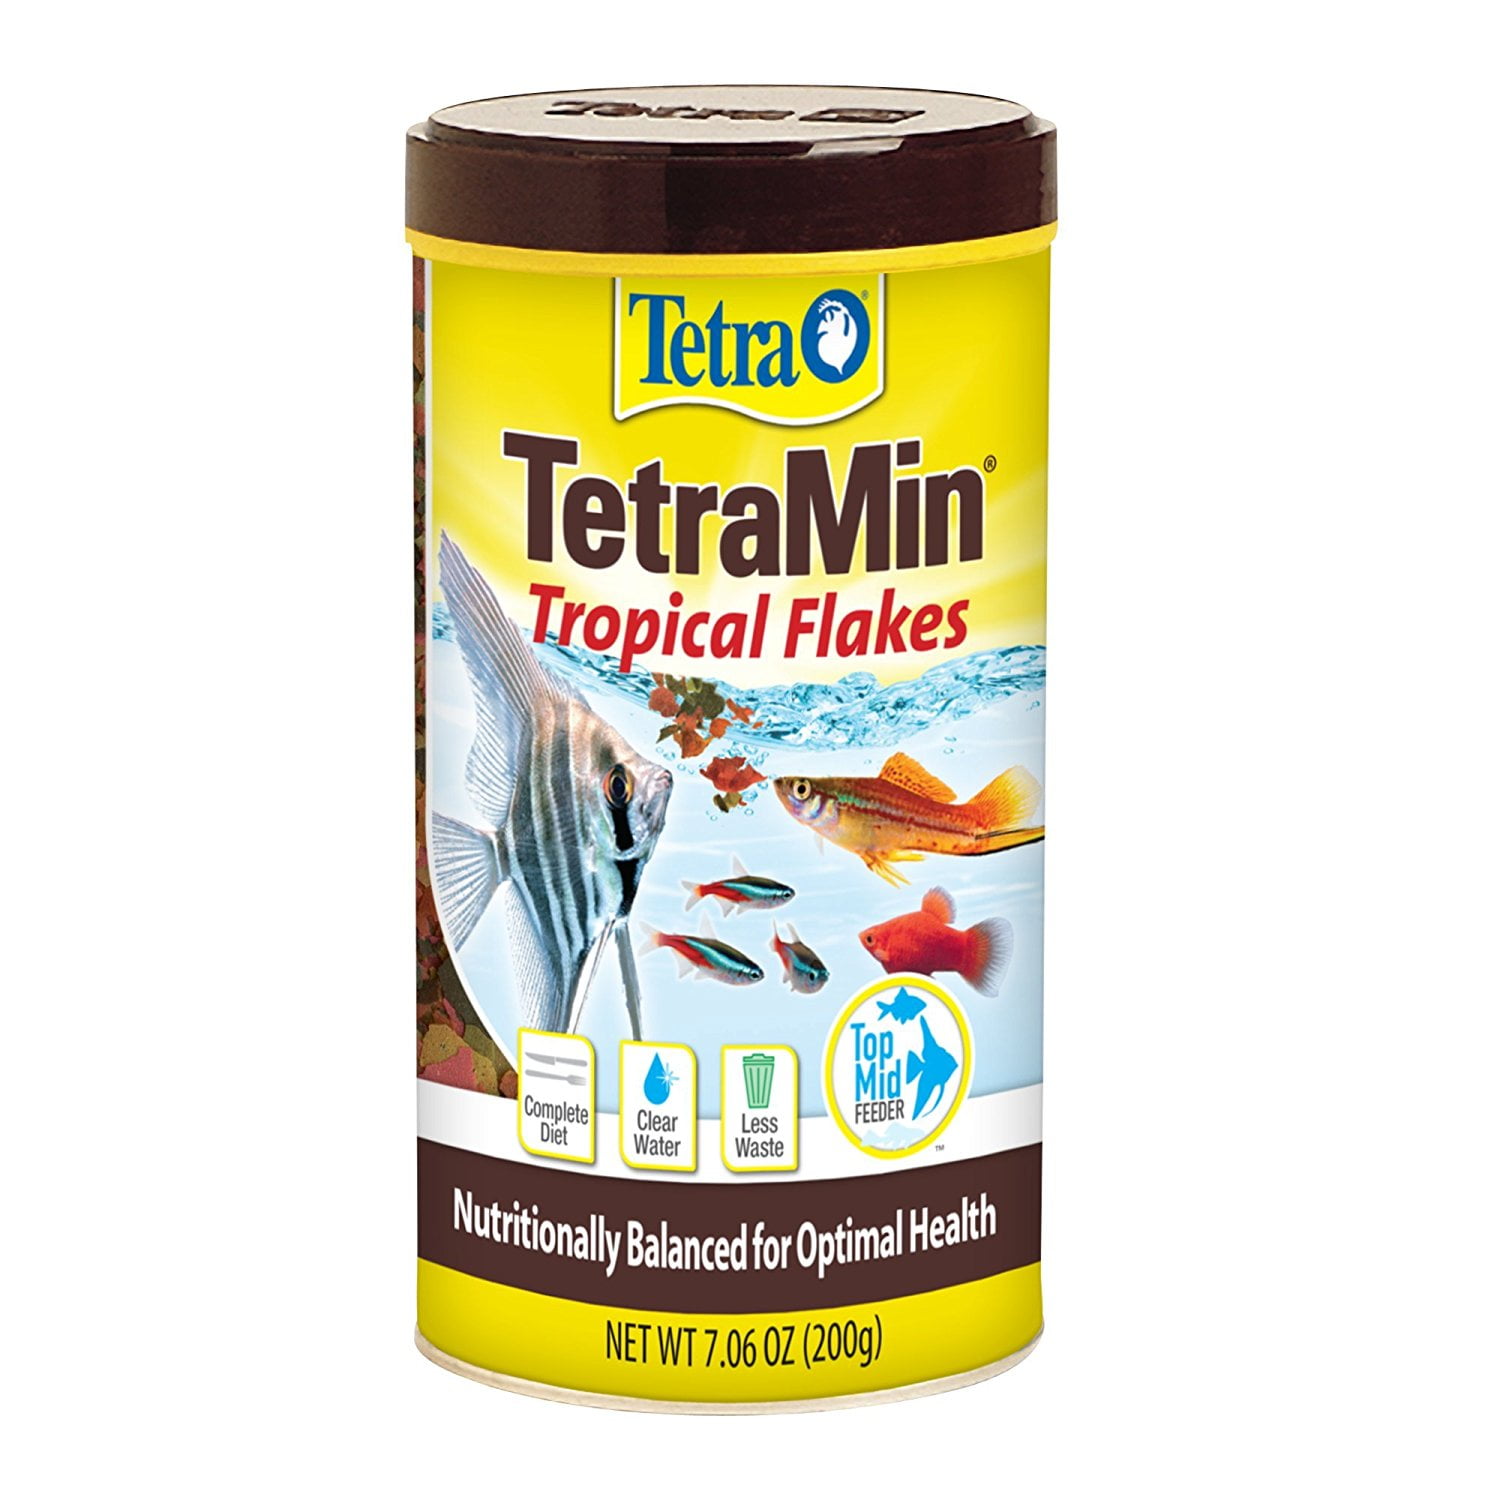 Tetra TetraMin Tropical Flakes, Pet Supplies Hartz